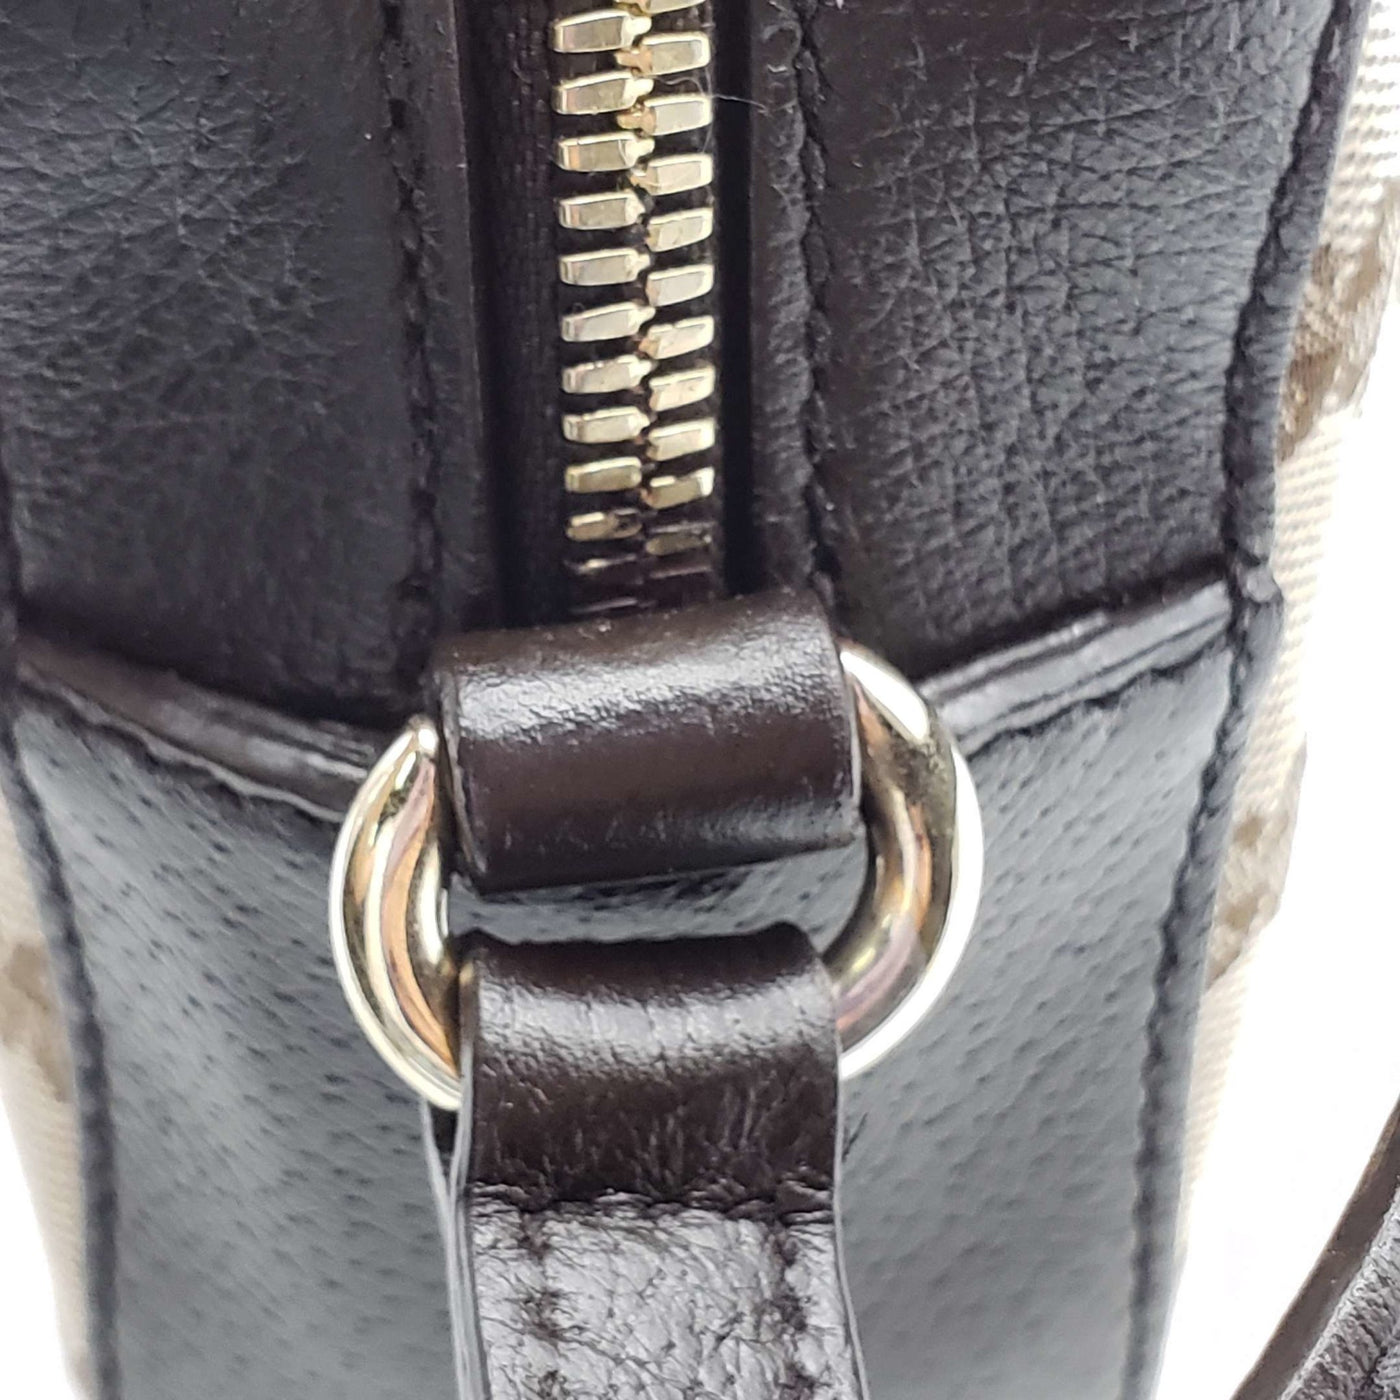 Gucci Bee Soho Camera Crossbody Bag | Luxury Cheaper.